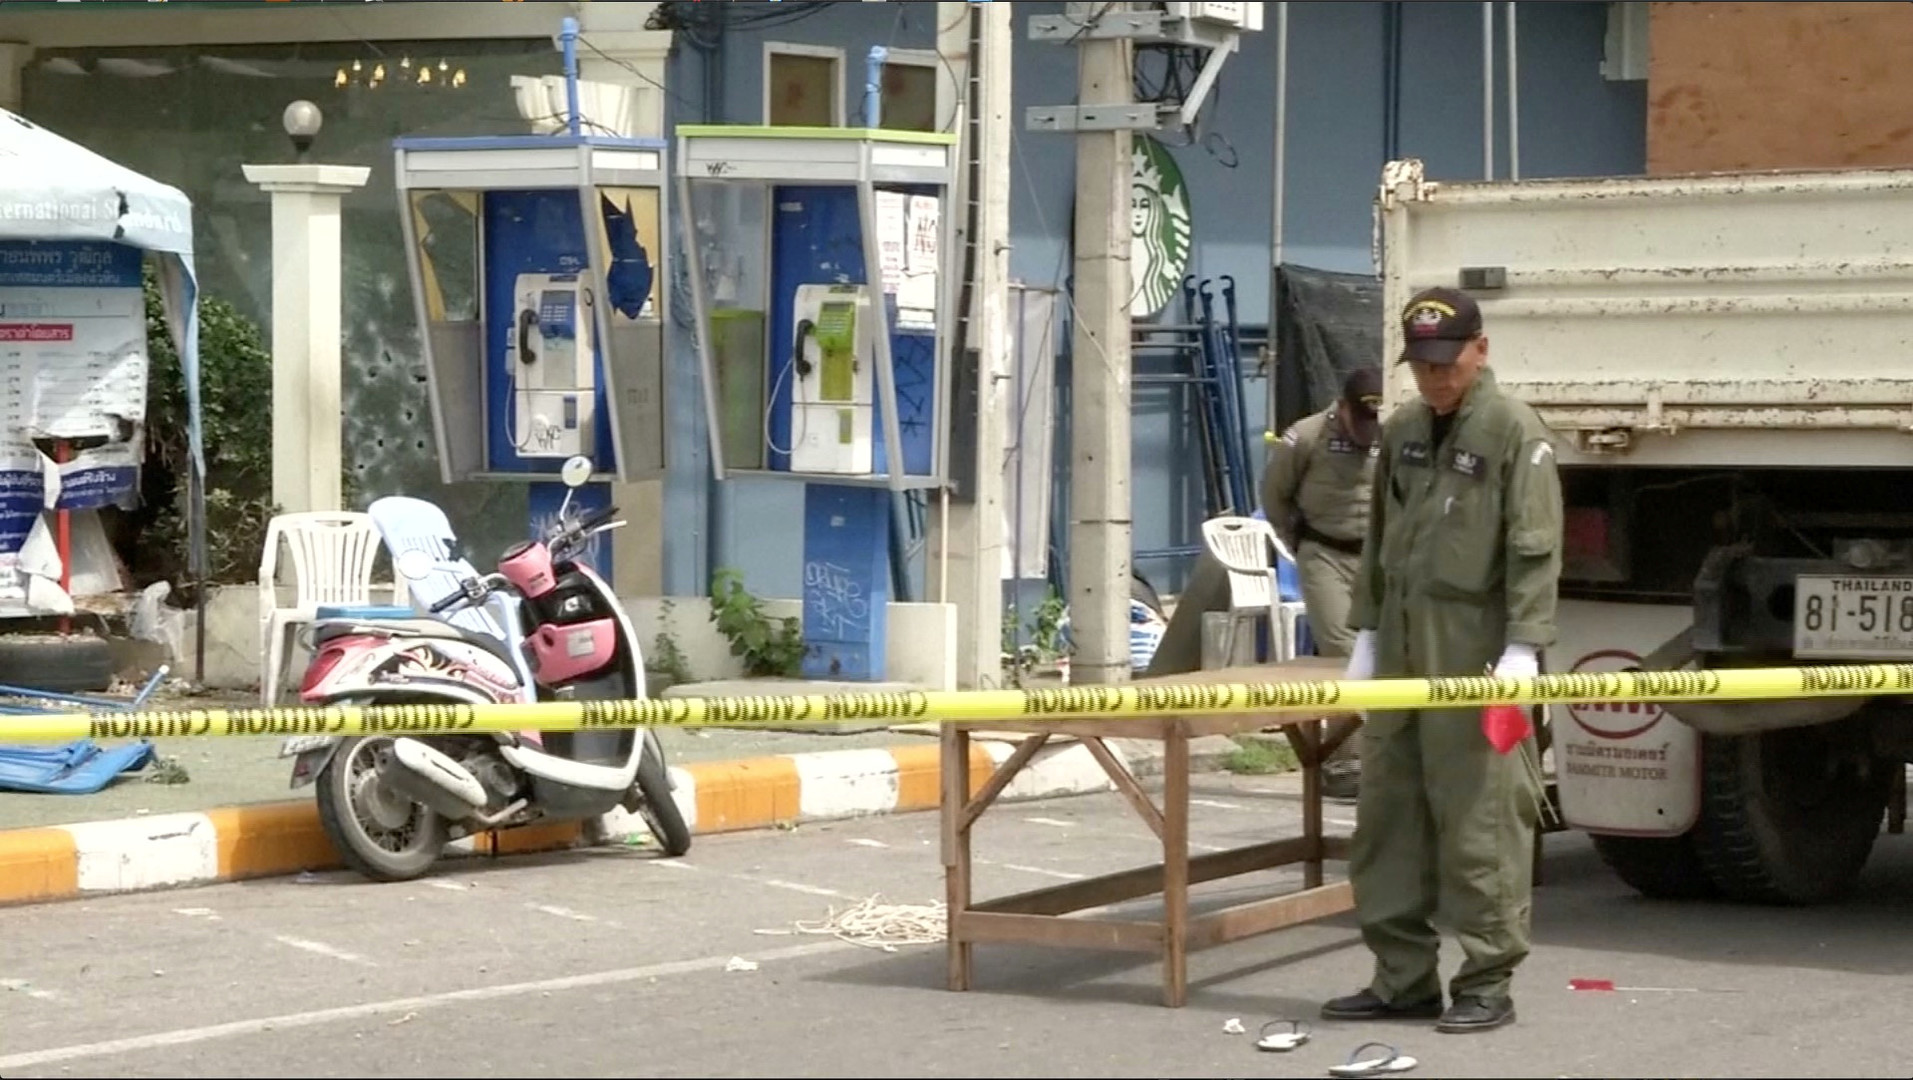 Thaïlande : plusieurs attaques à la bombe font au moins quatre morts et de nombreux blessés